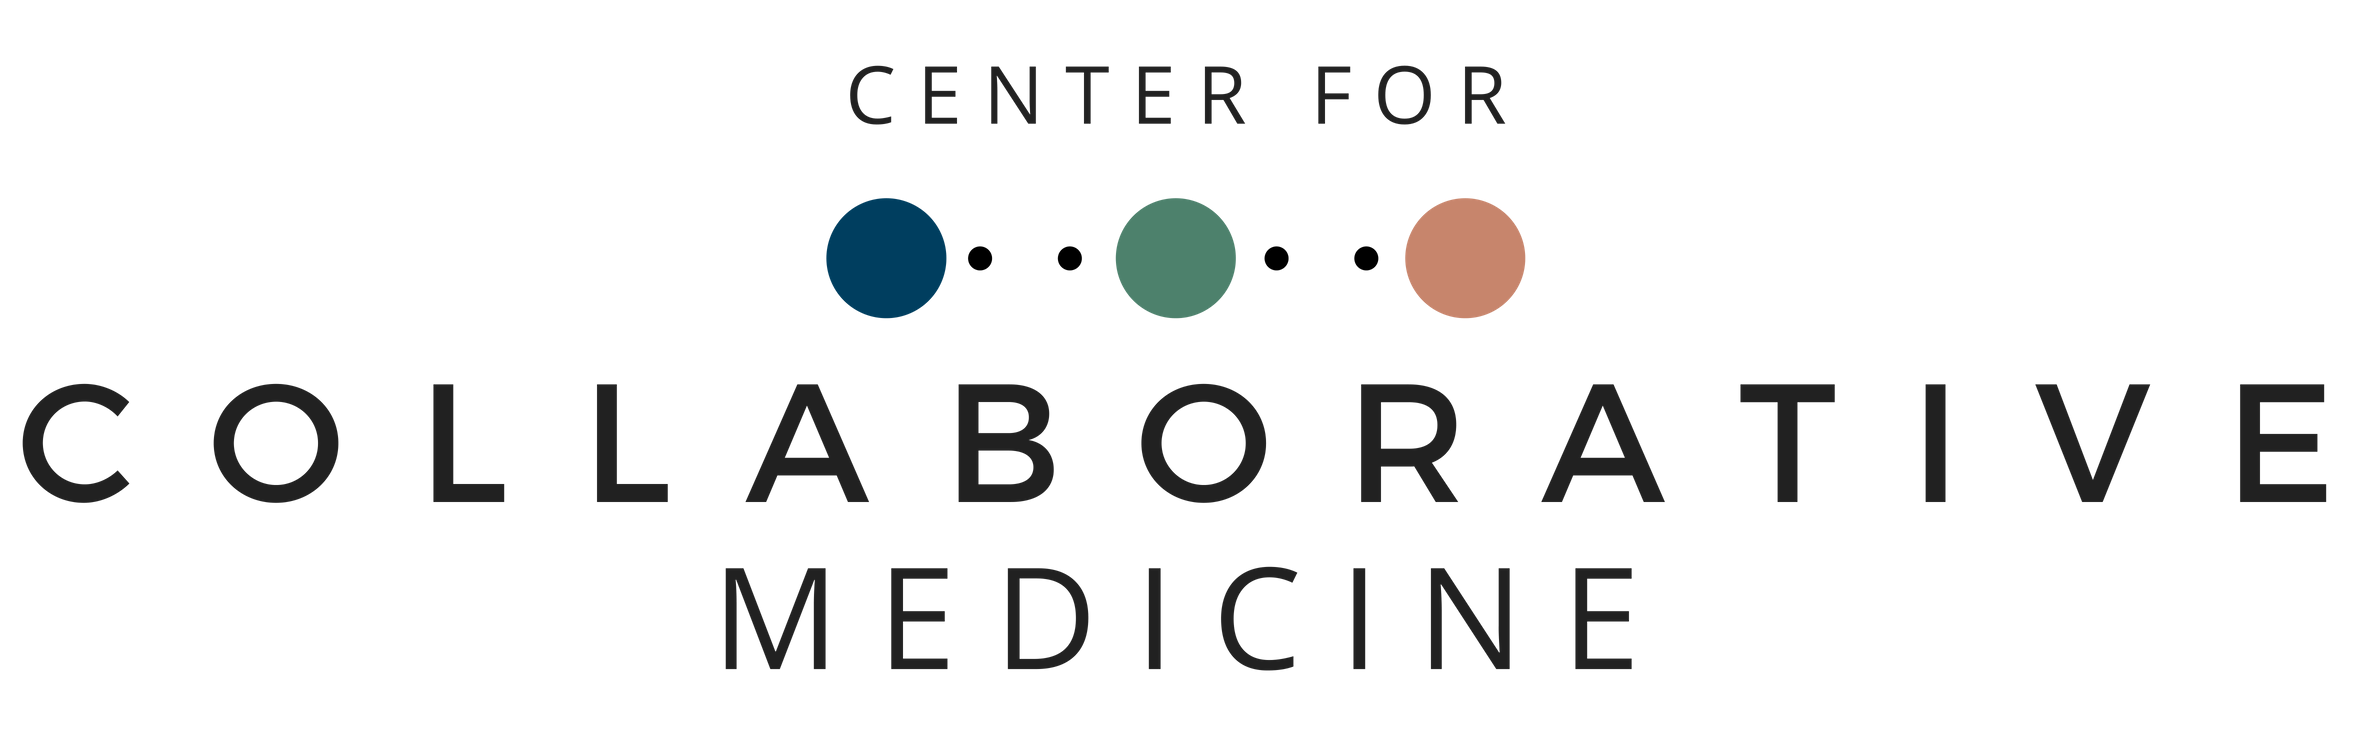 Center for Collaborative Medicine